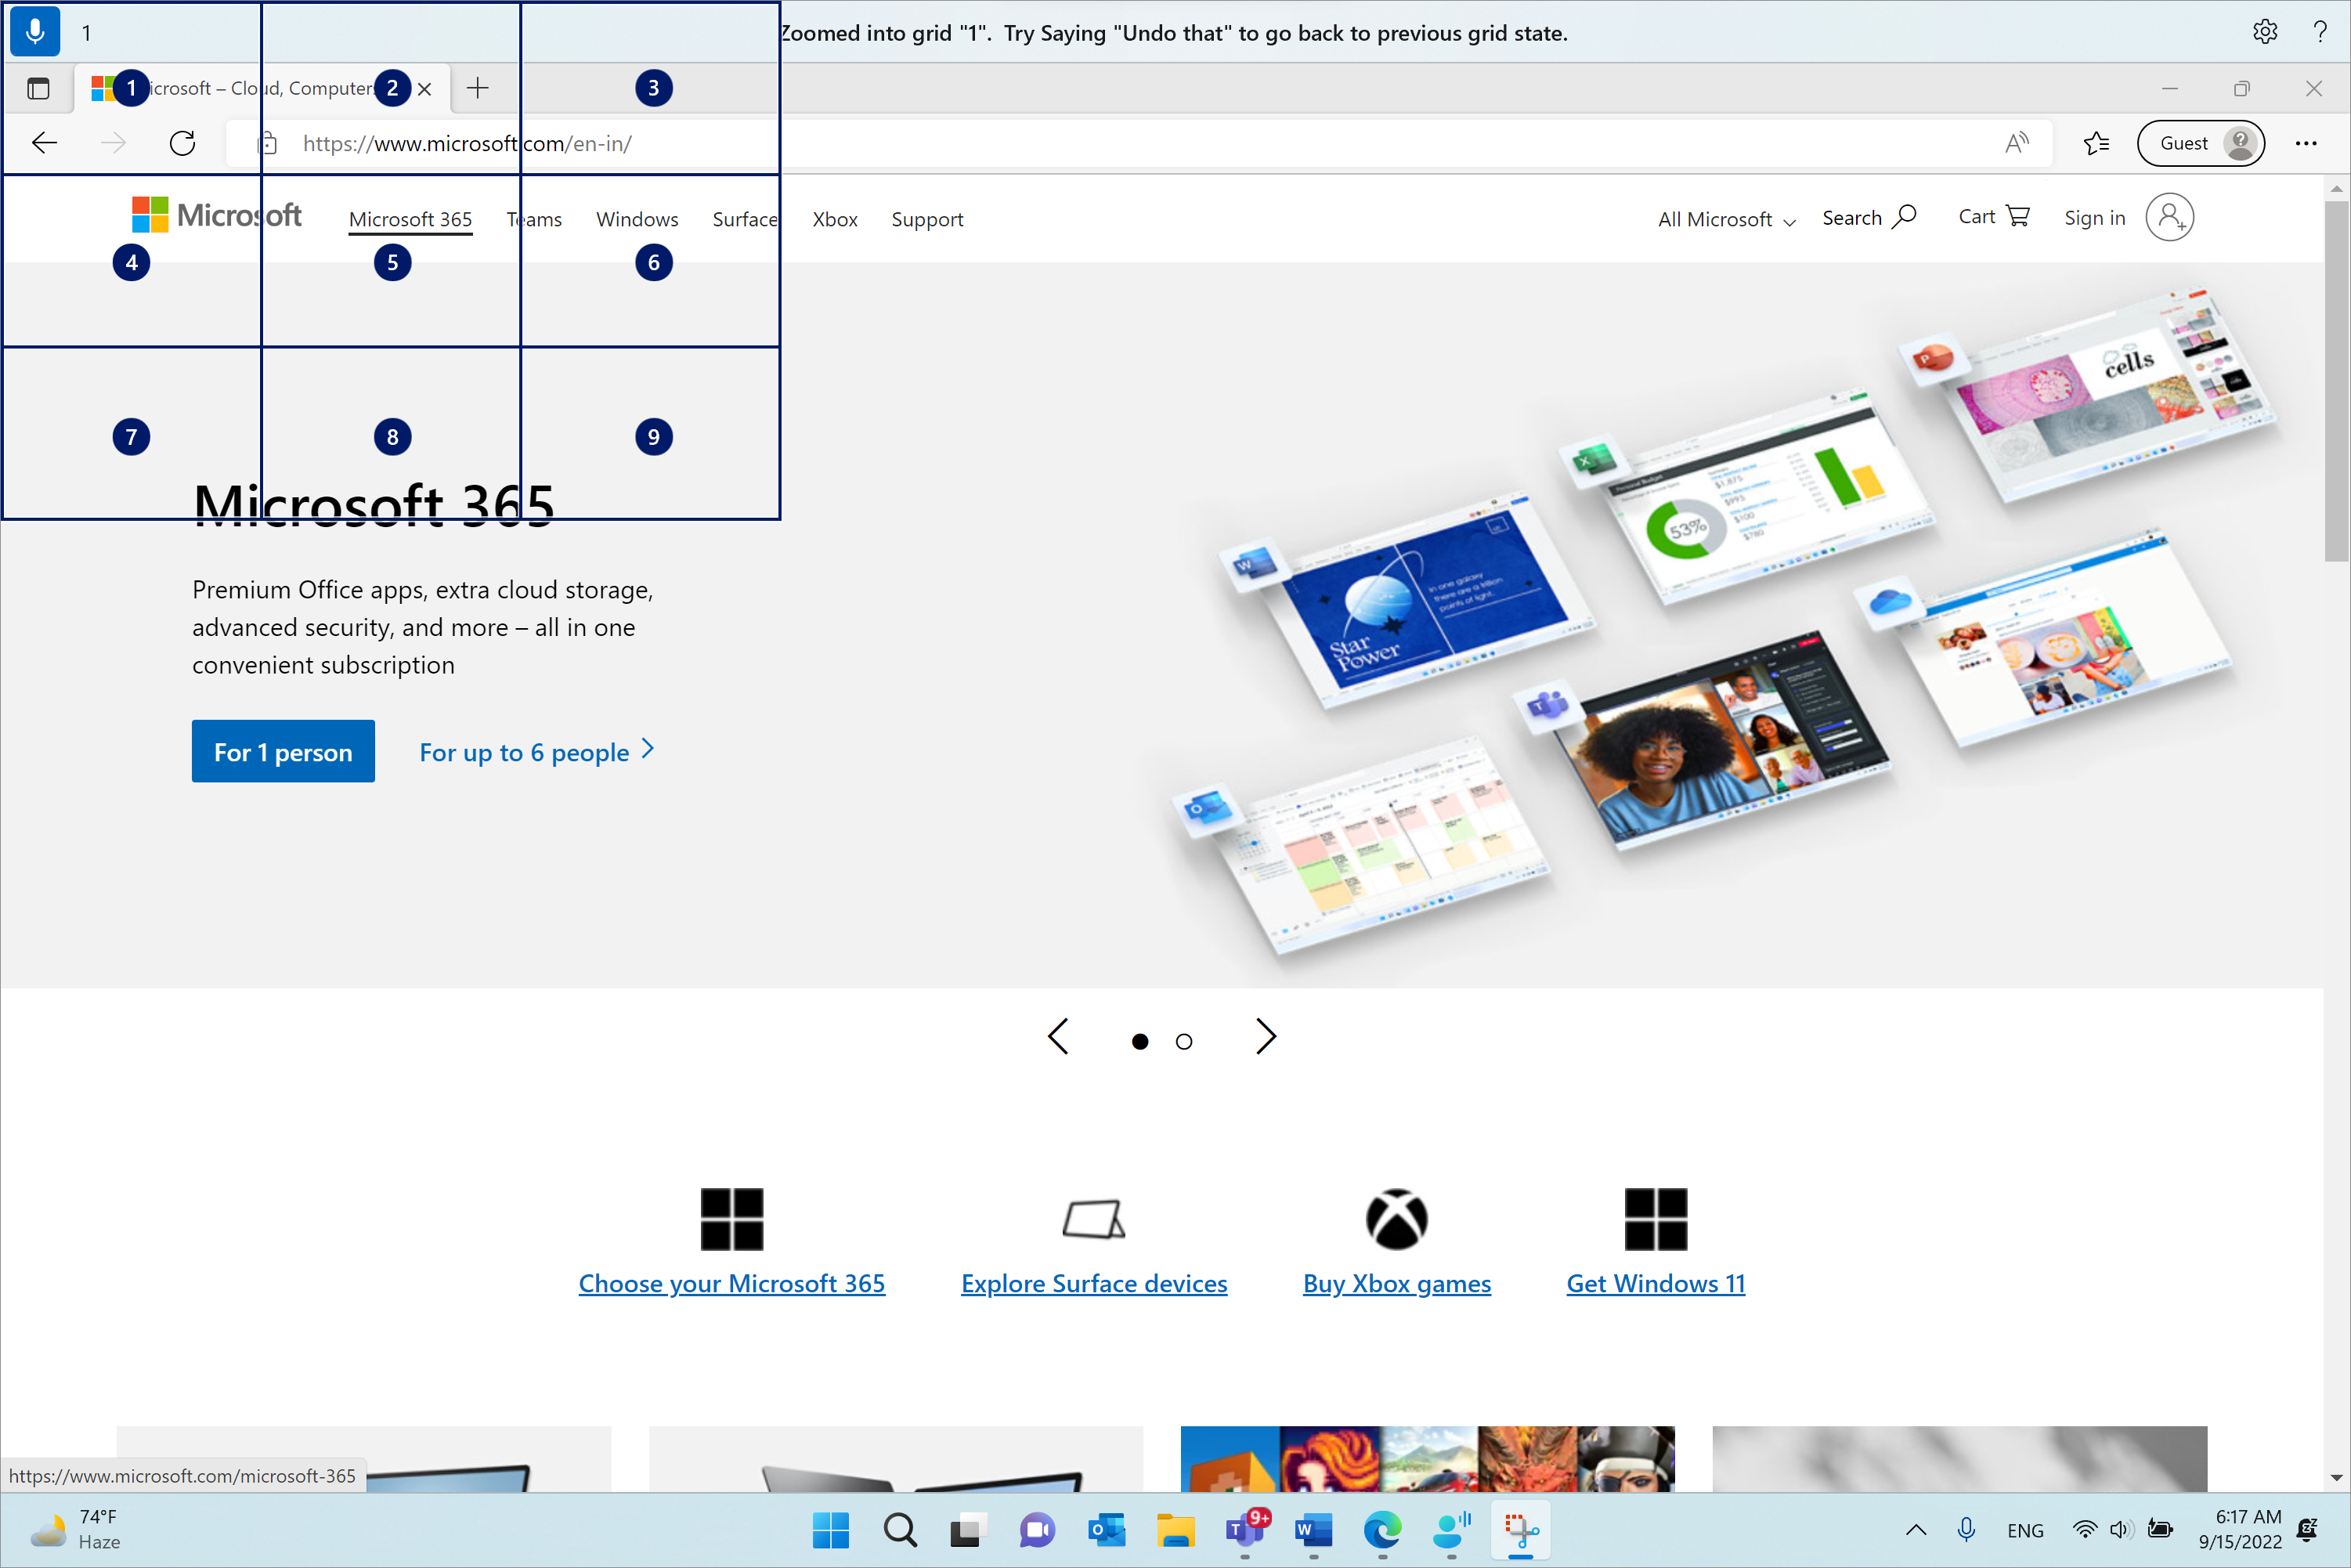 Microsoft Edge 已開啟且位於 Microsoft.com 頁面上。 語音存取列位於頂端且處於聆聽狀態。 發出的命令是「1」，而顯示的意見反應是「放大到格線」1。 請嘗試說「復原」，回到先前的格線狀態。」